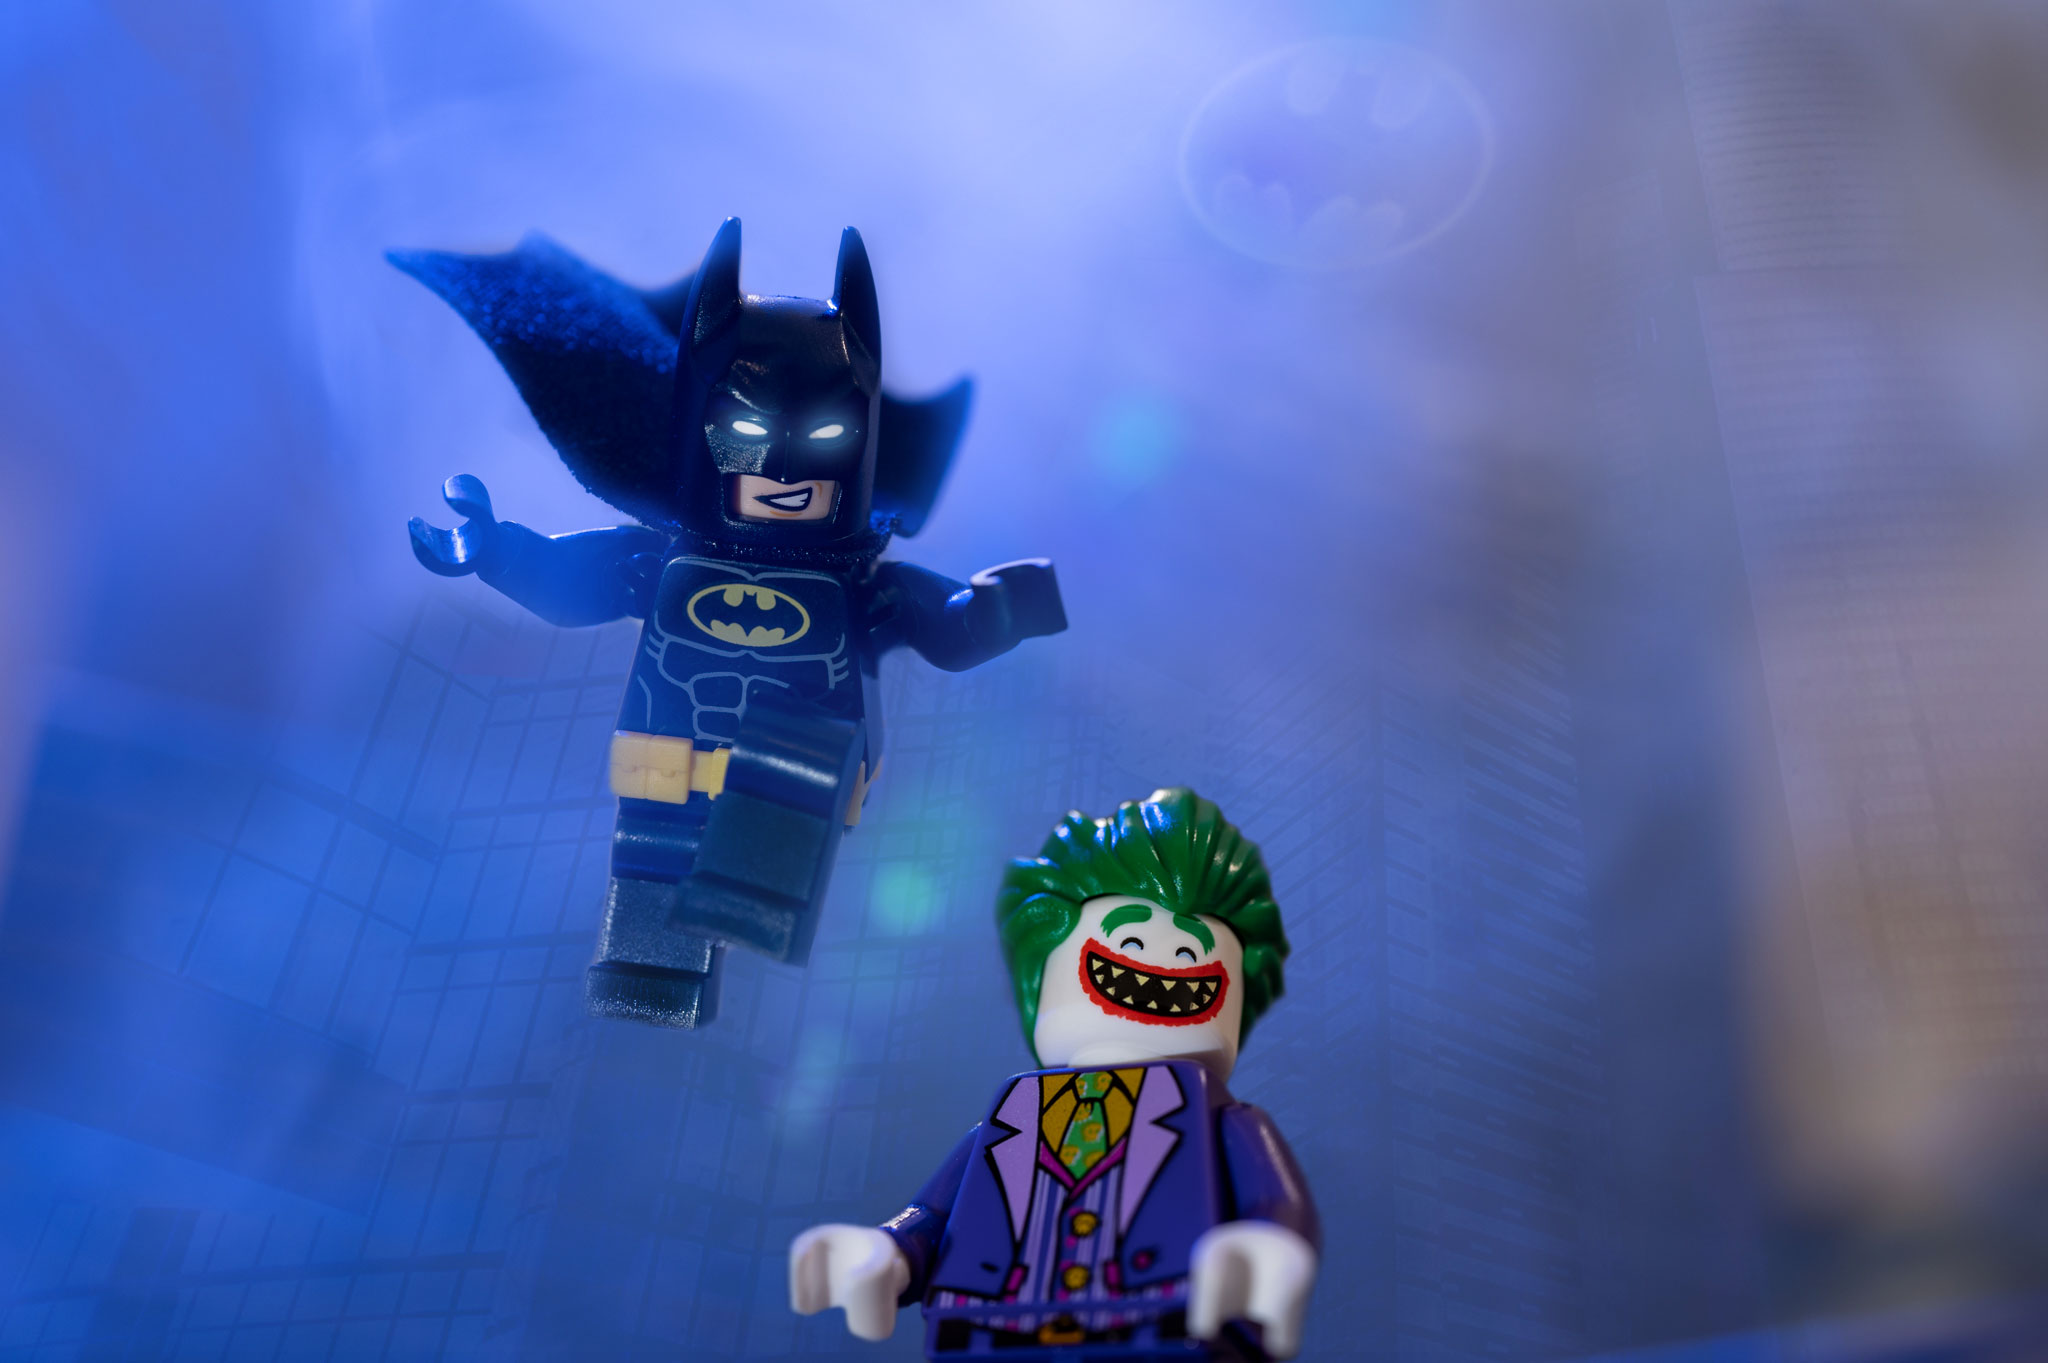 LEGO-batman-VS-Joker - Toy Photographers